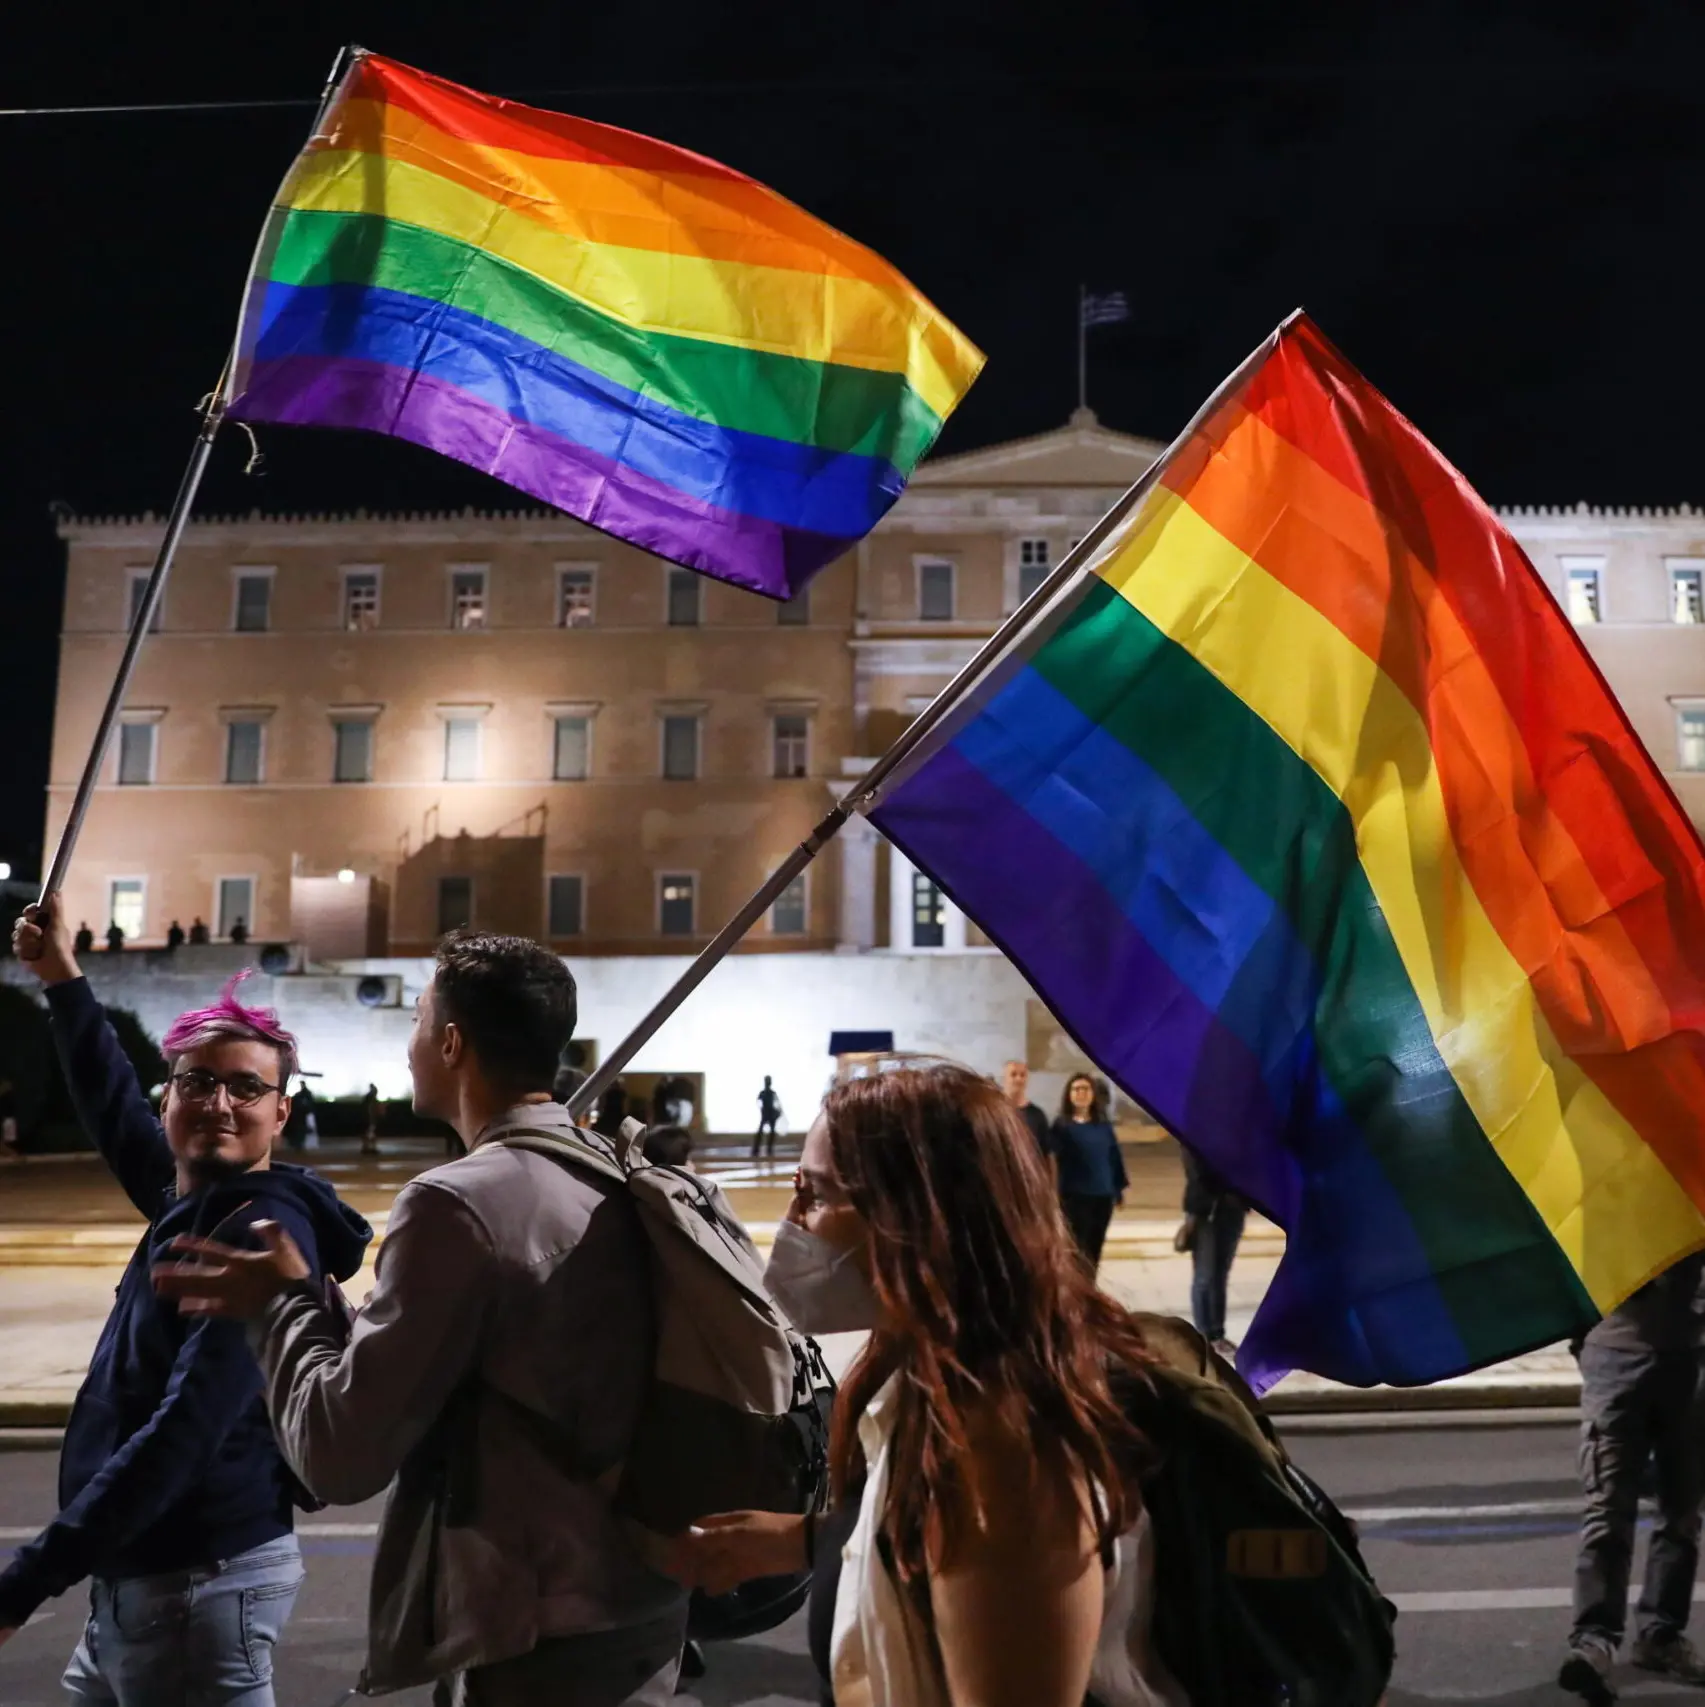 Matrimonio gay, anche la Grecia fa meglio dell’Italia